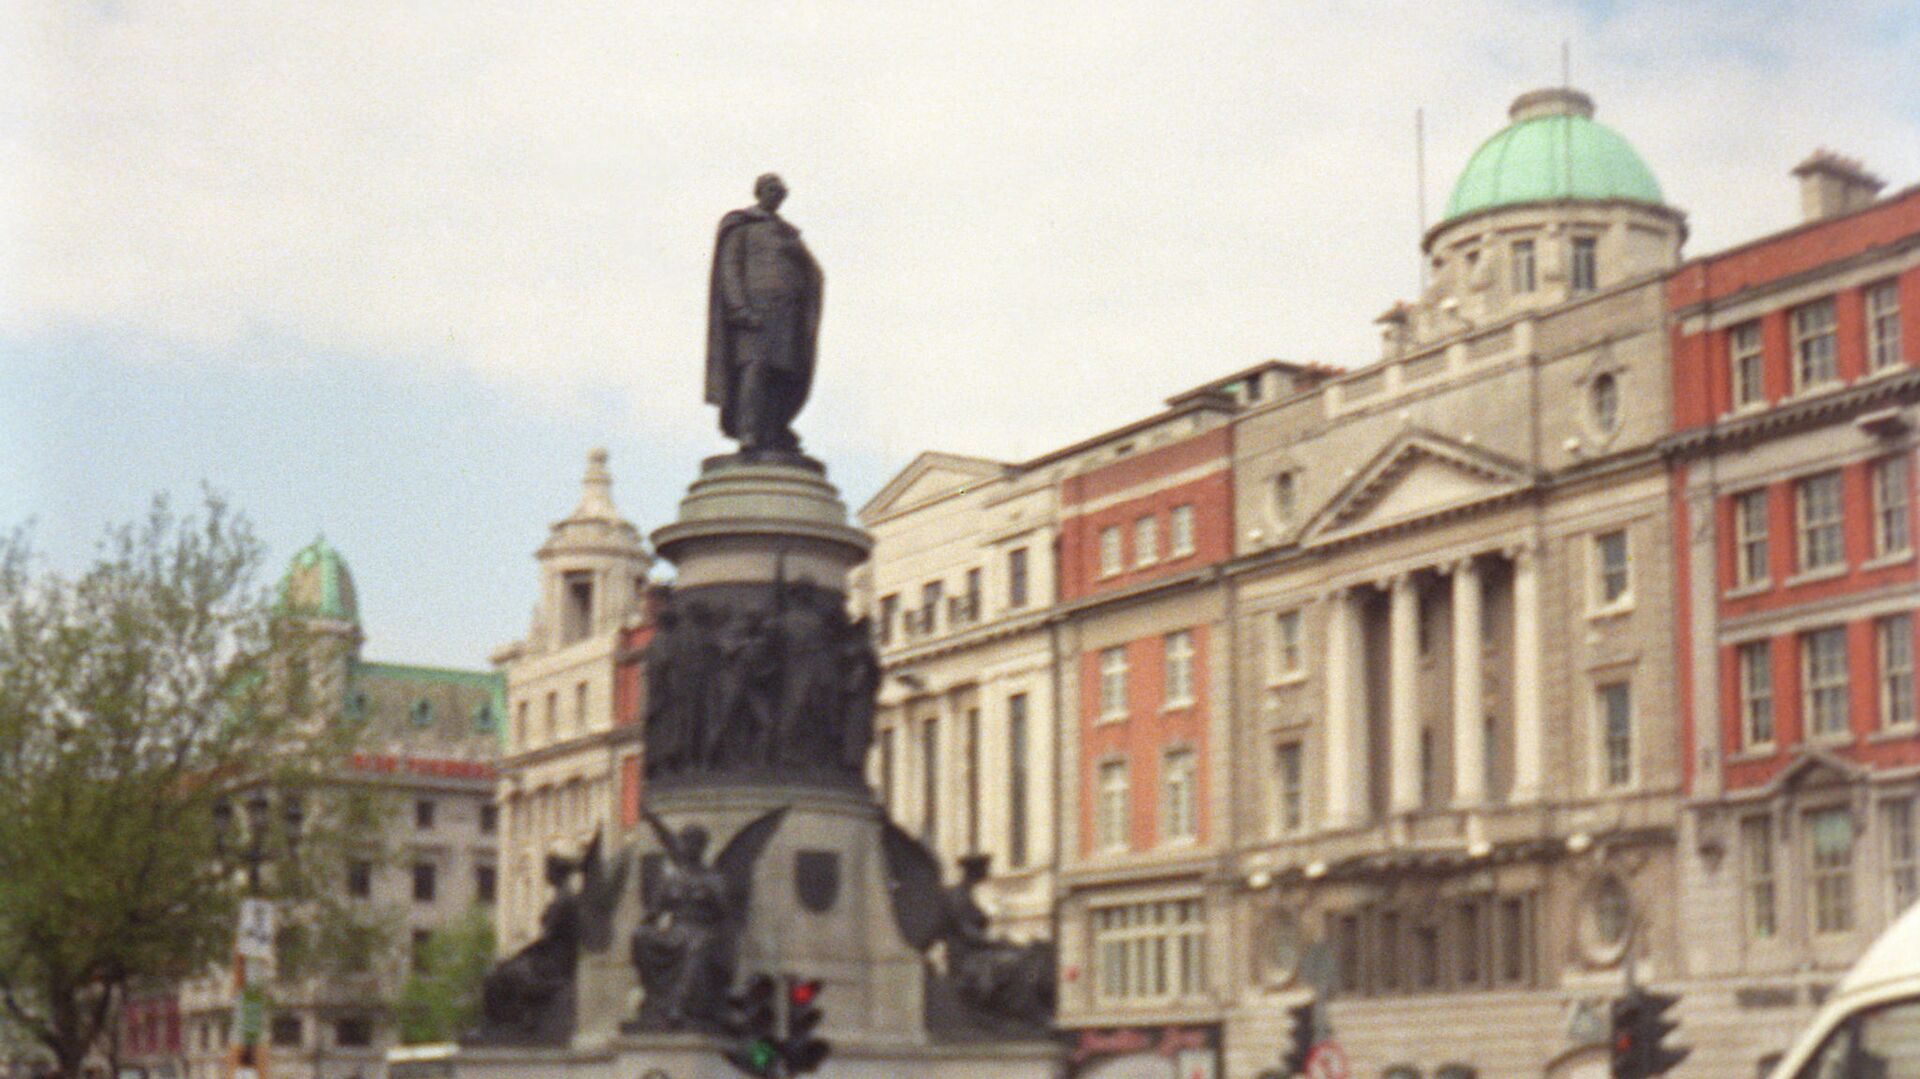 Памятник ирландскому политику Дэниелу О’Коннеллу работы скульпторов Джона Генри Фоли и Томаса Брока, открытый в Дублине в 1882 году. - Sputnik Армения, 1920, 27.05.2021